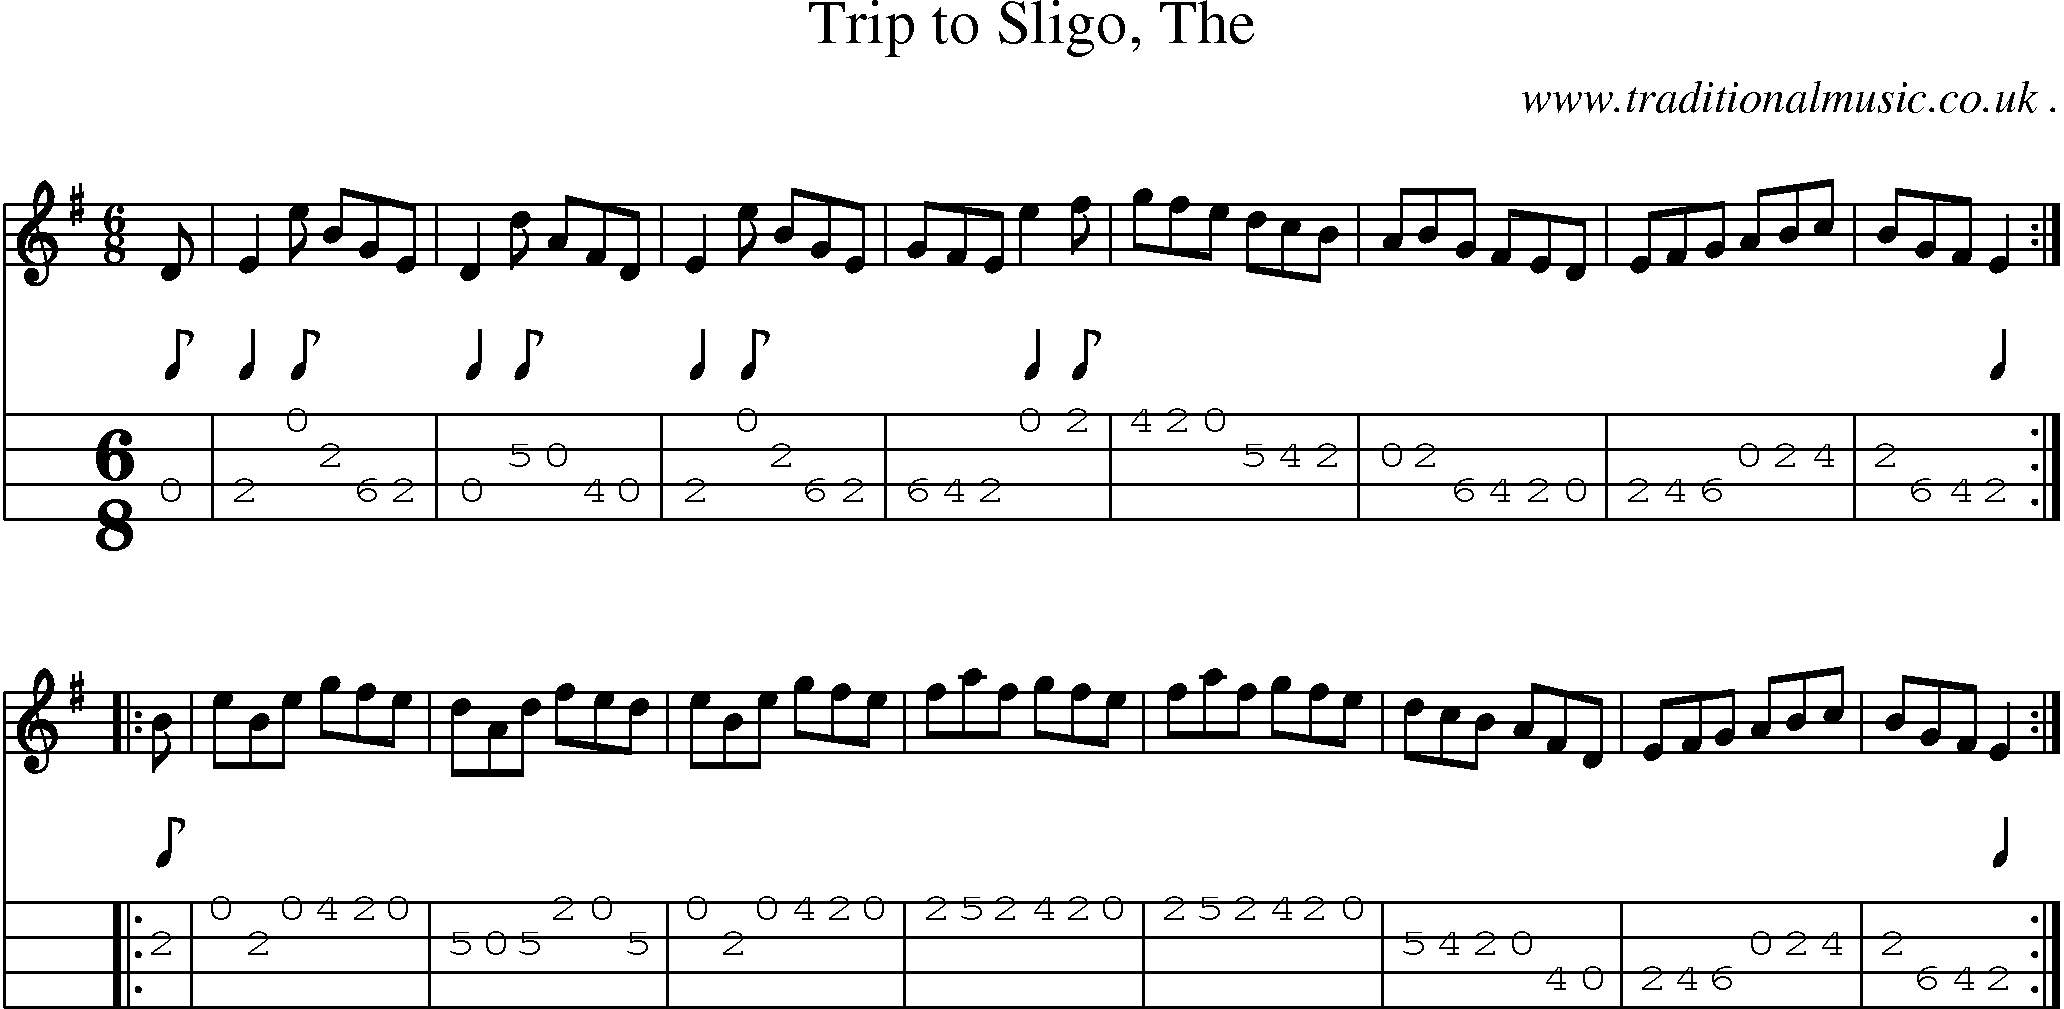 Sheet-music  score, Chords and Mandolin Tabs for Trip To Sligo The